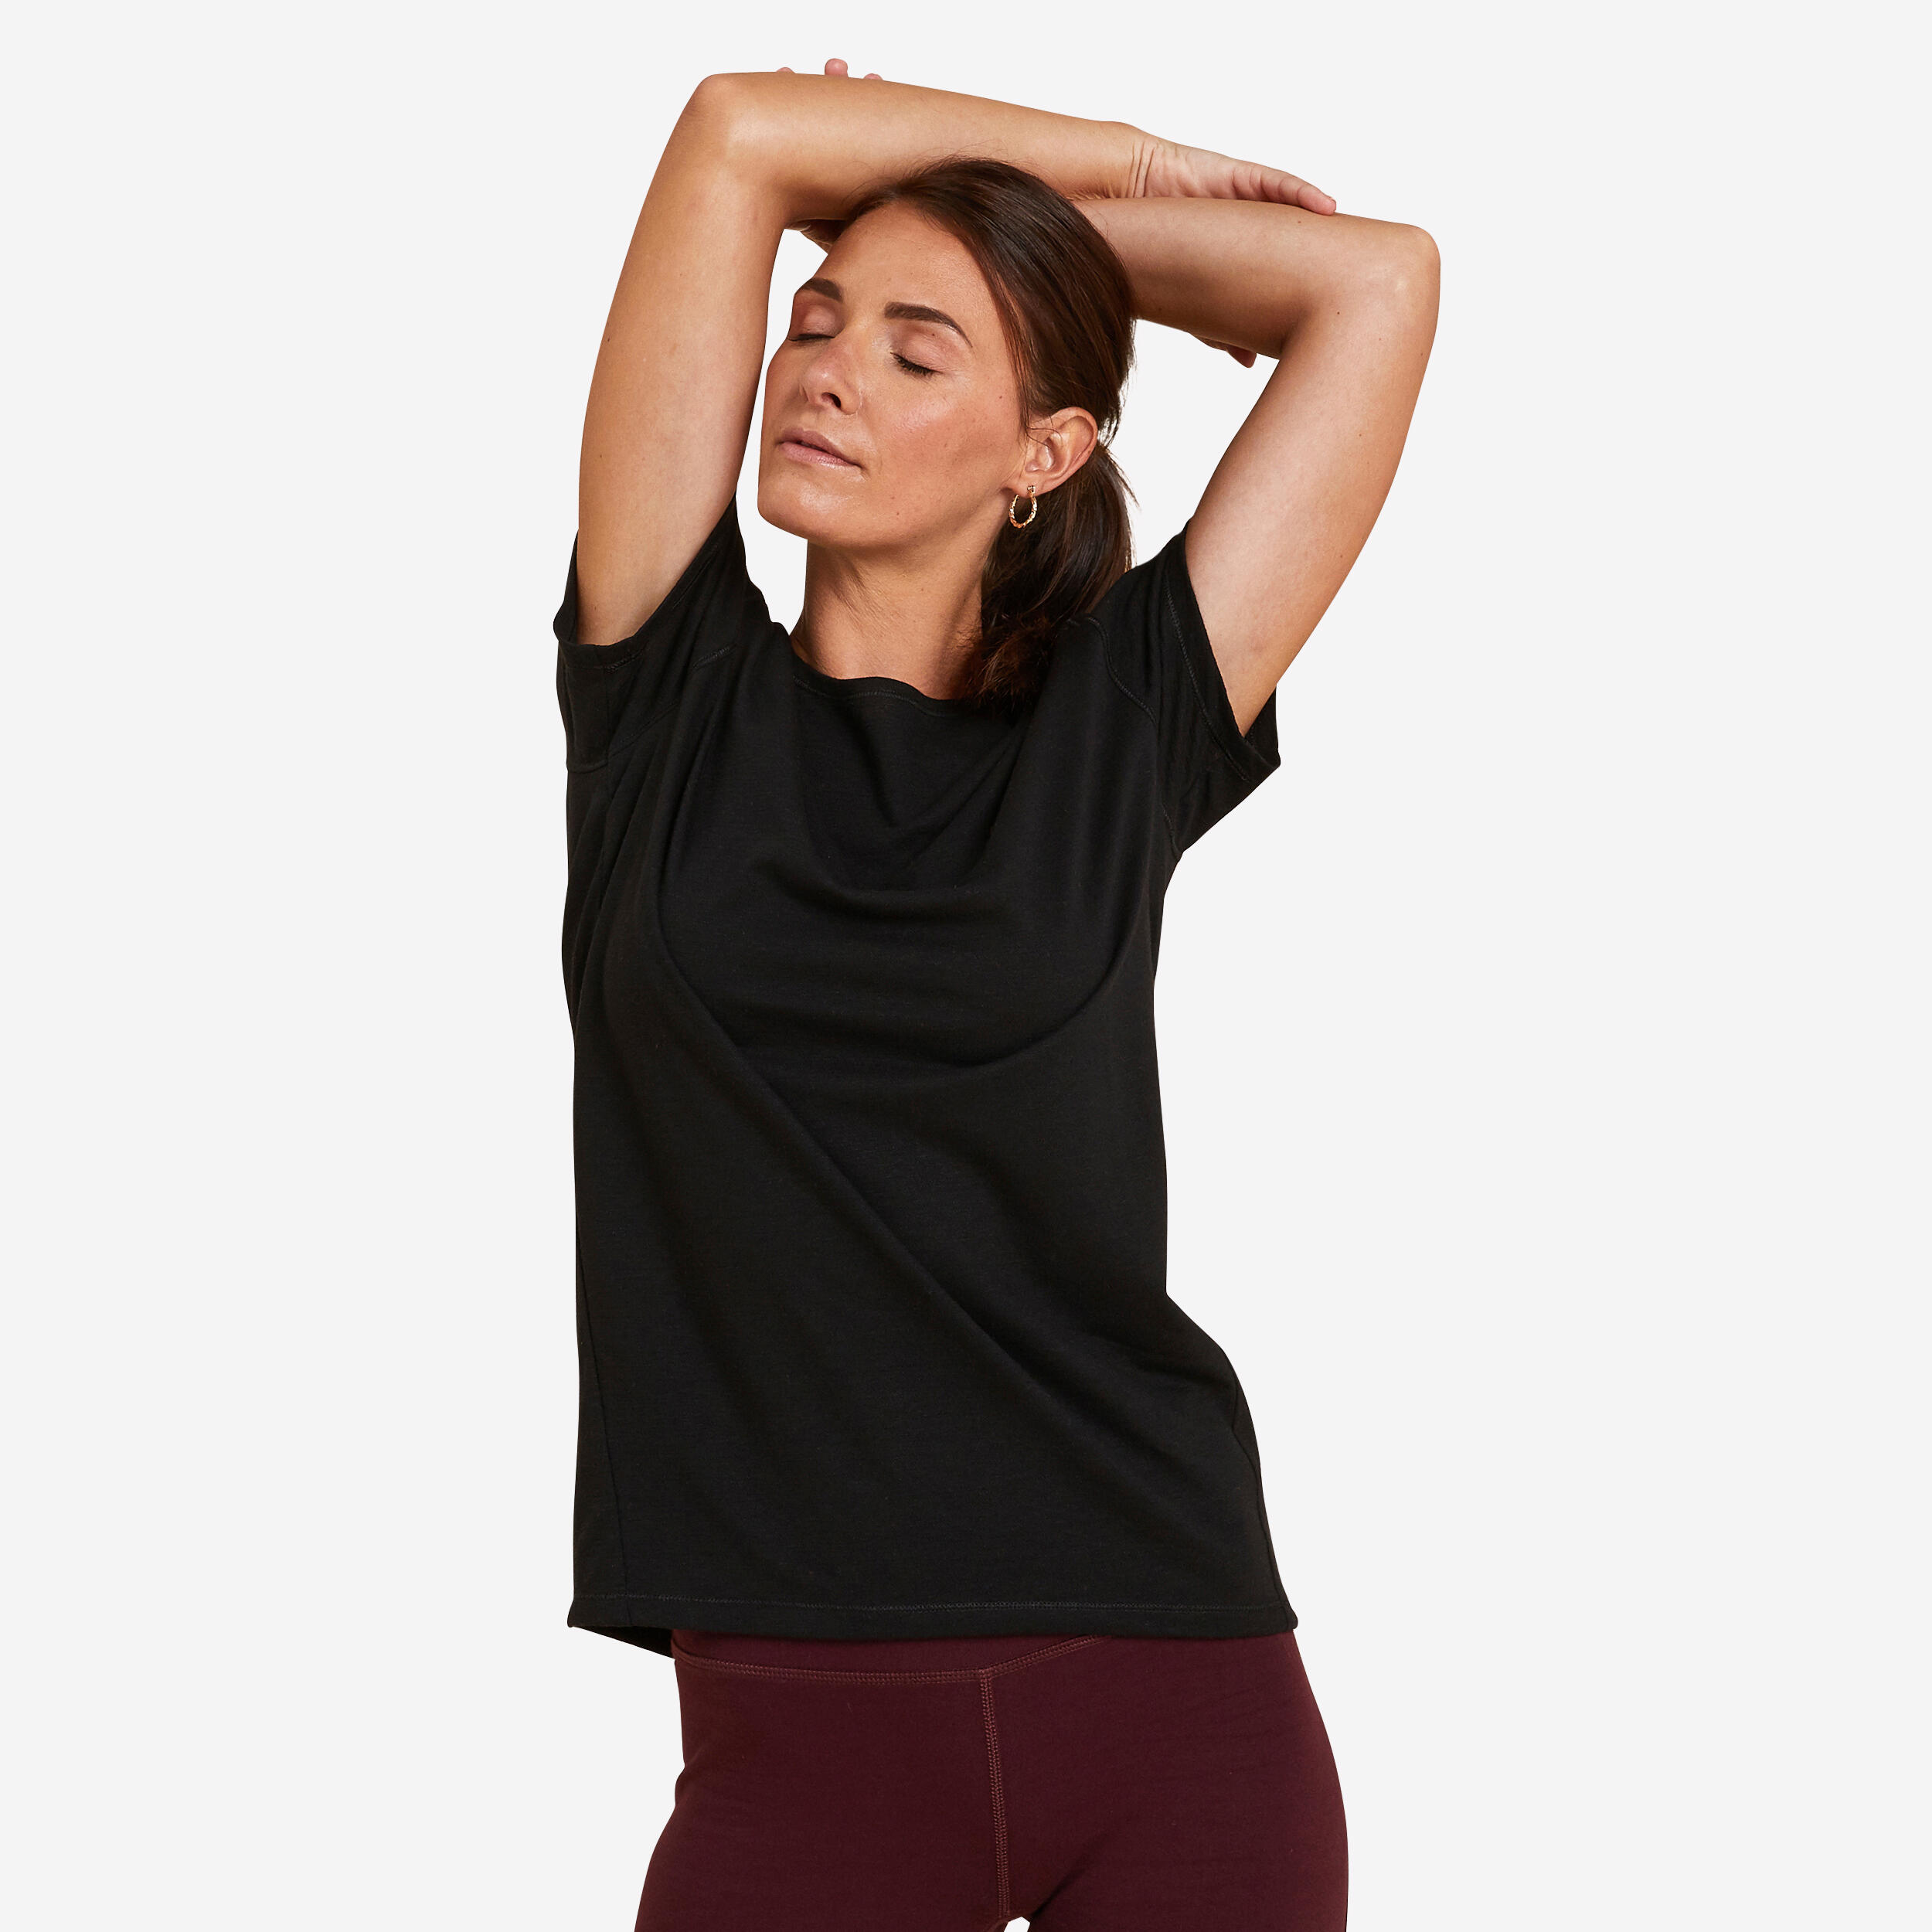 Women’s Yoga T-Shirt - Black - KIMJALY